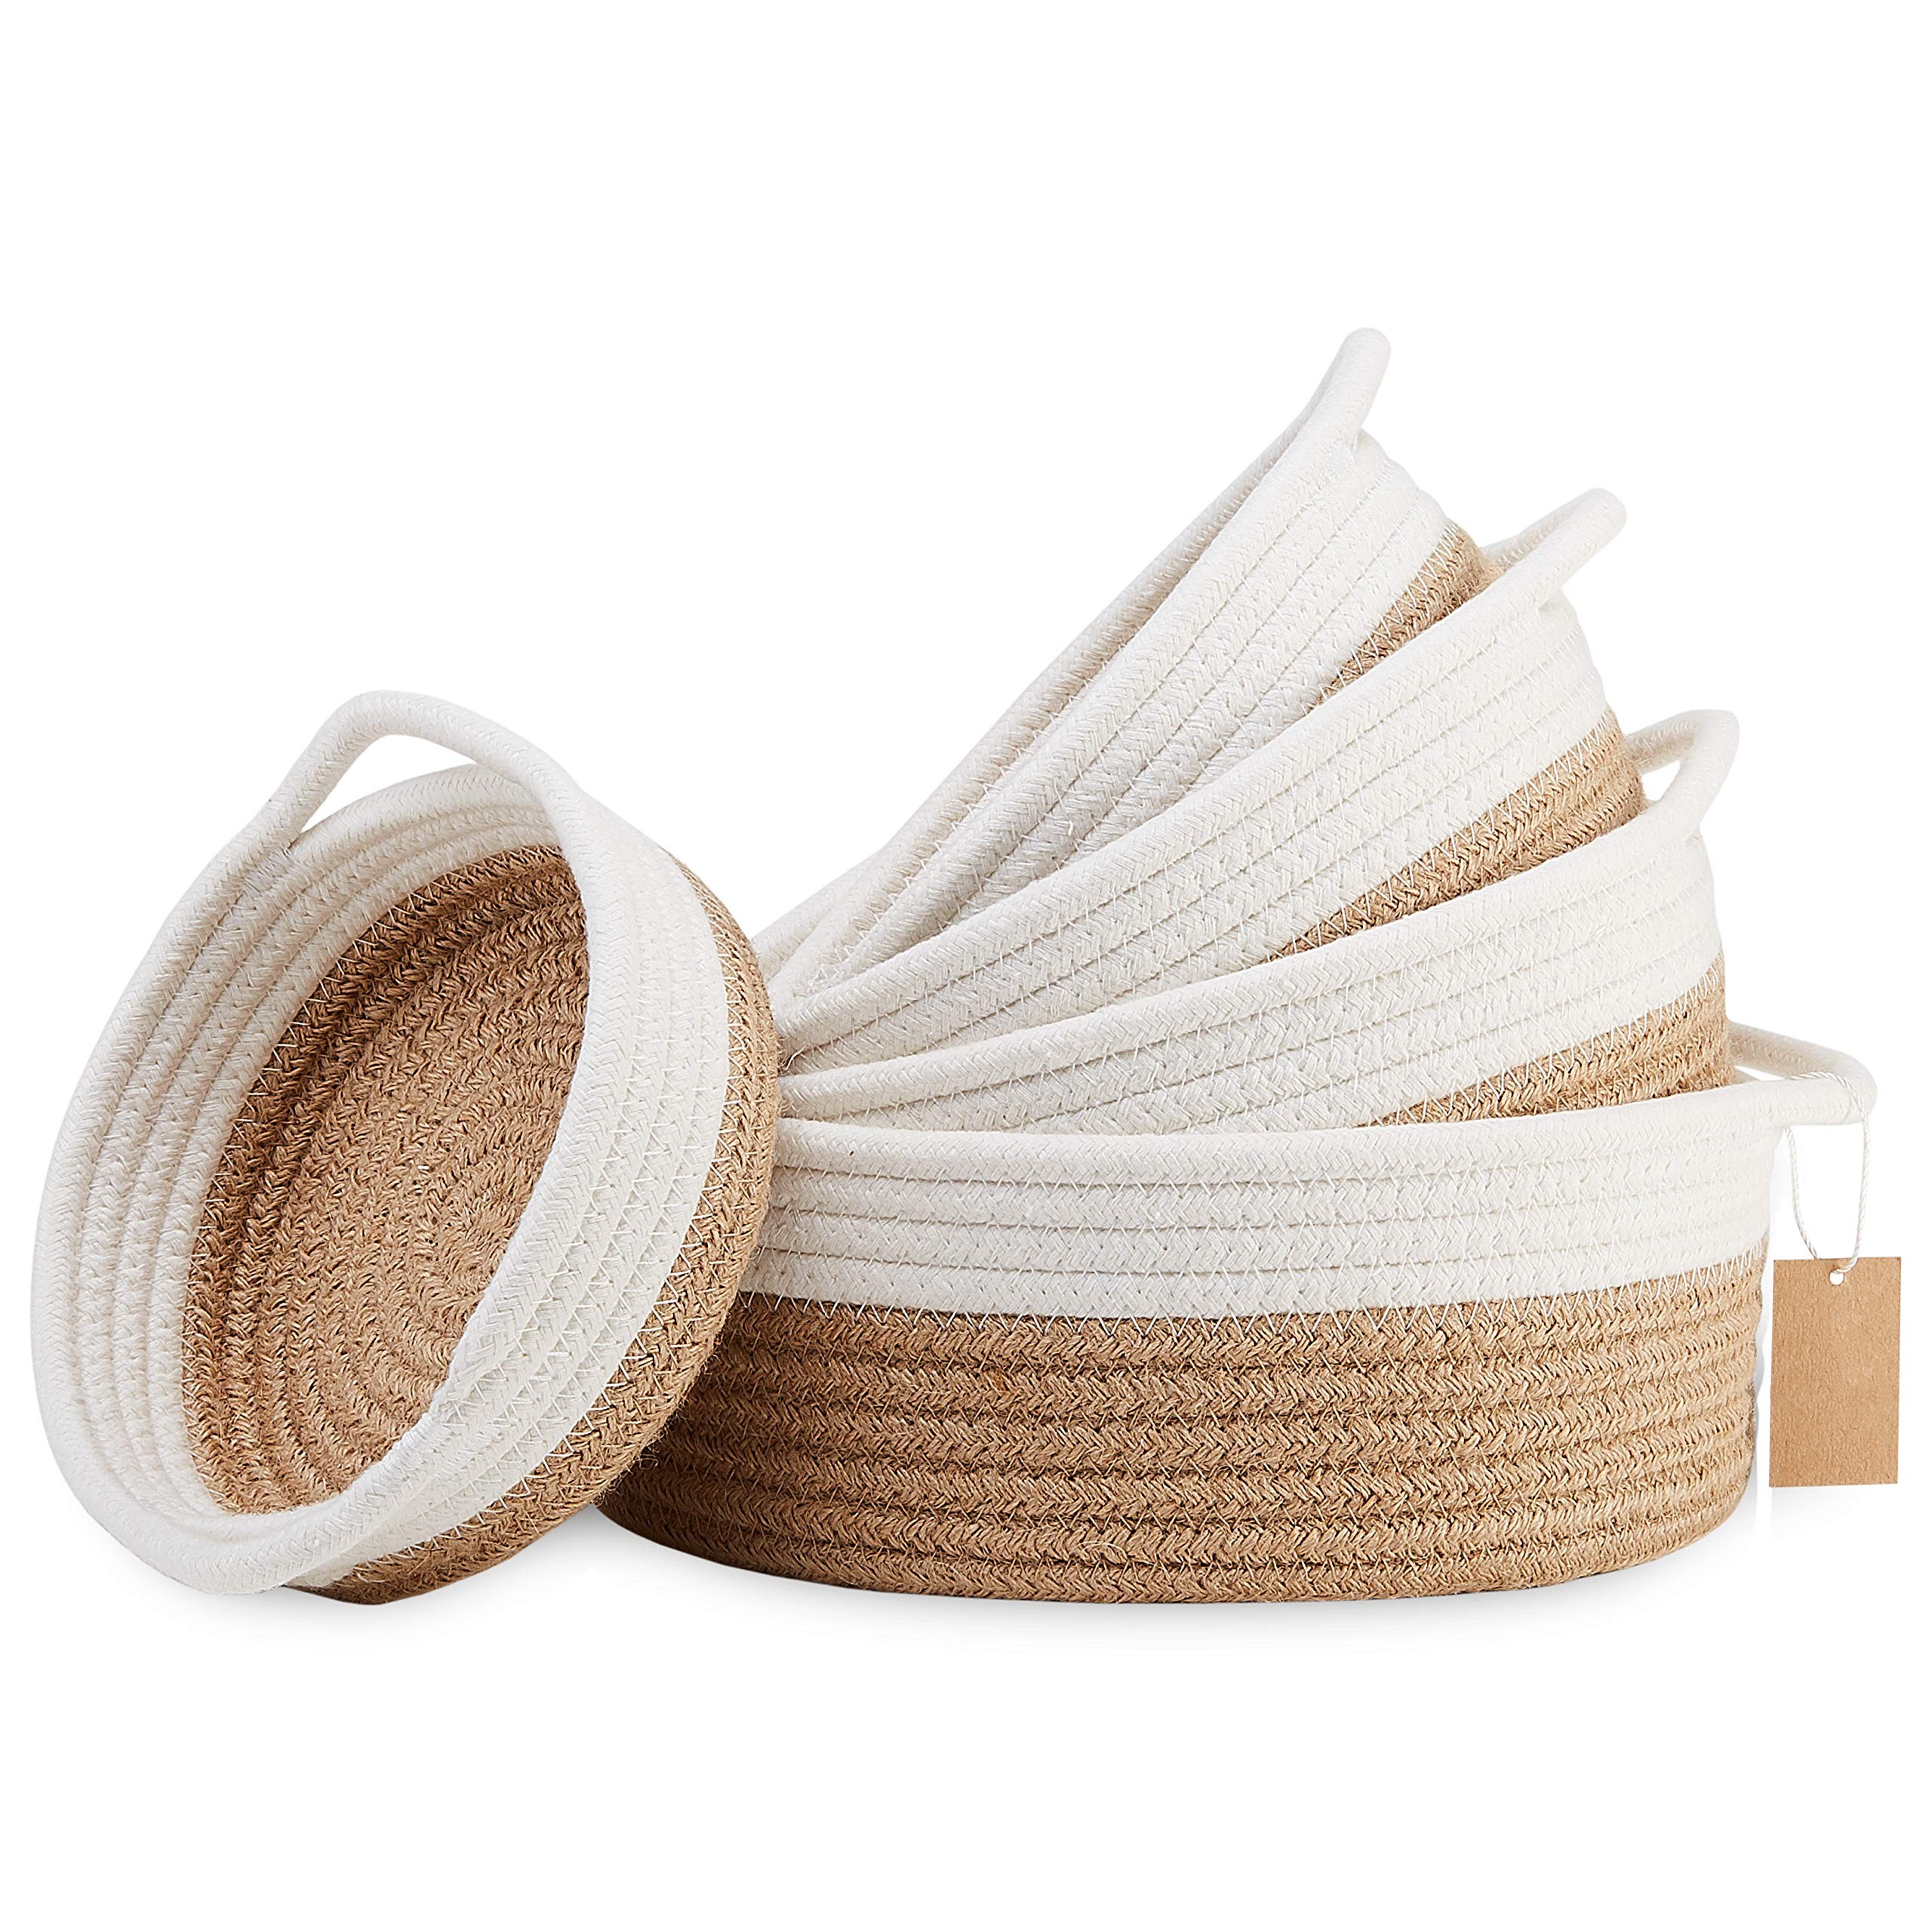 Juego de cestas tejidas pequeñas redondas 100% cuerda de algodón natural decoración del hogar